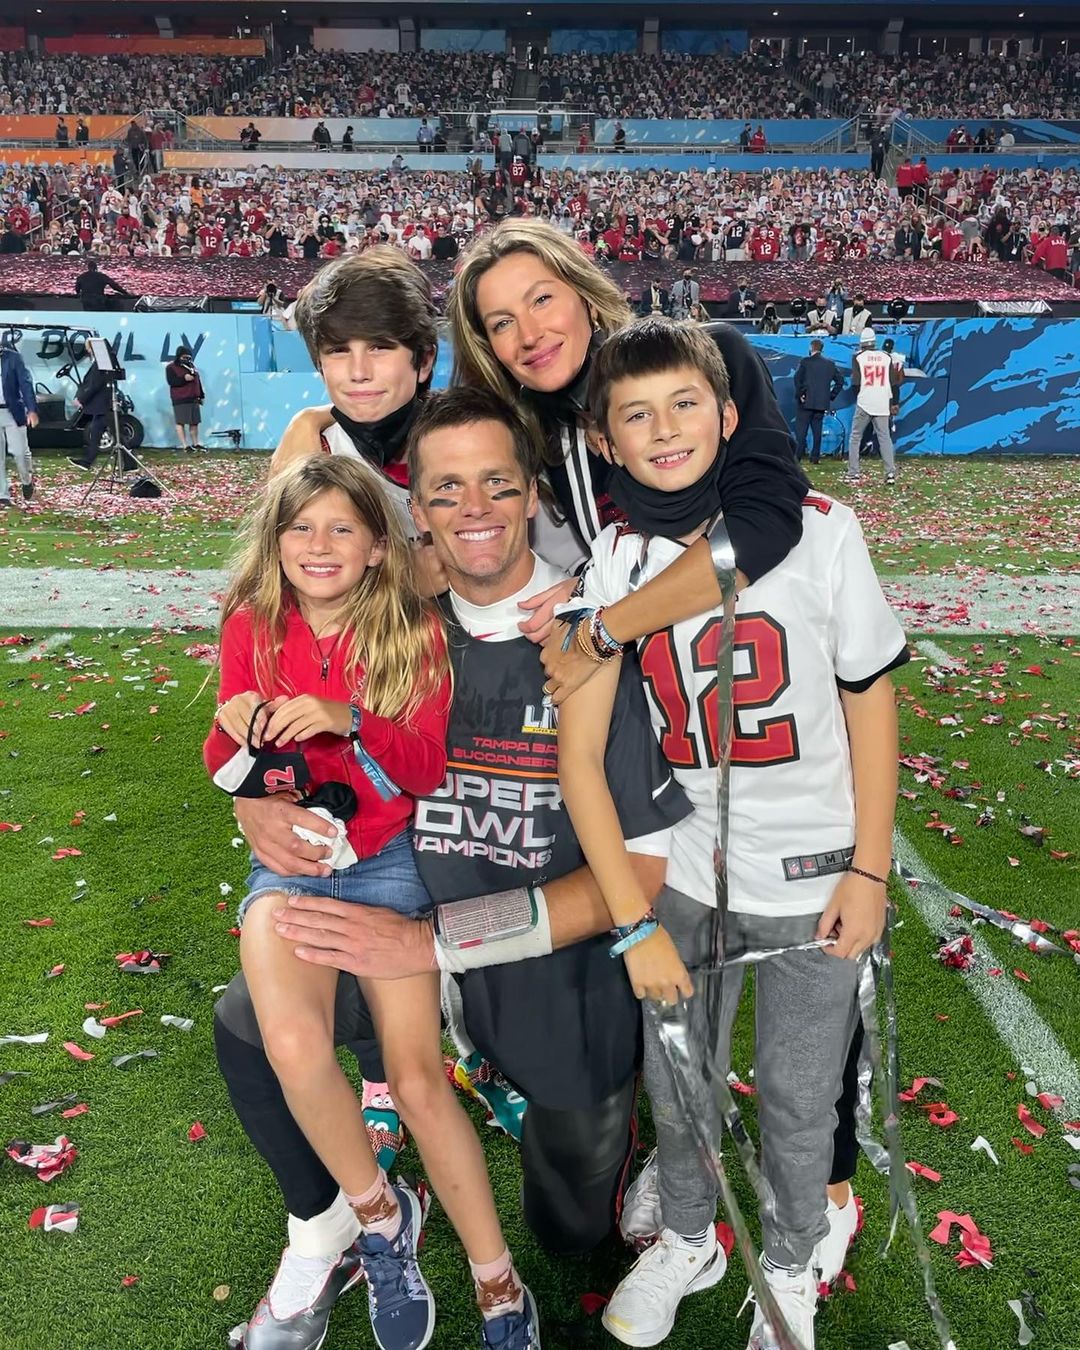 Tom Brady and Gisele Bundchen posing with their kids